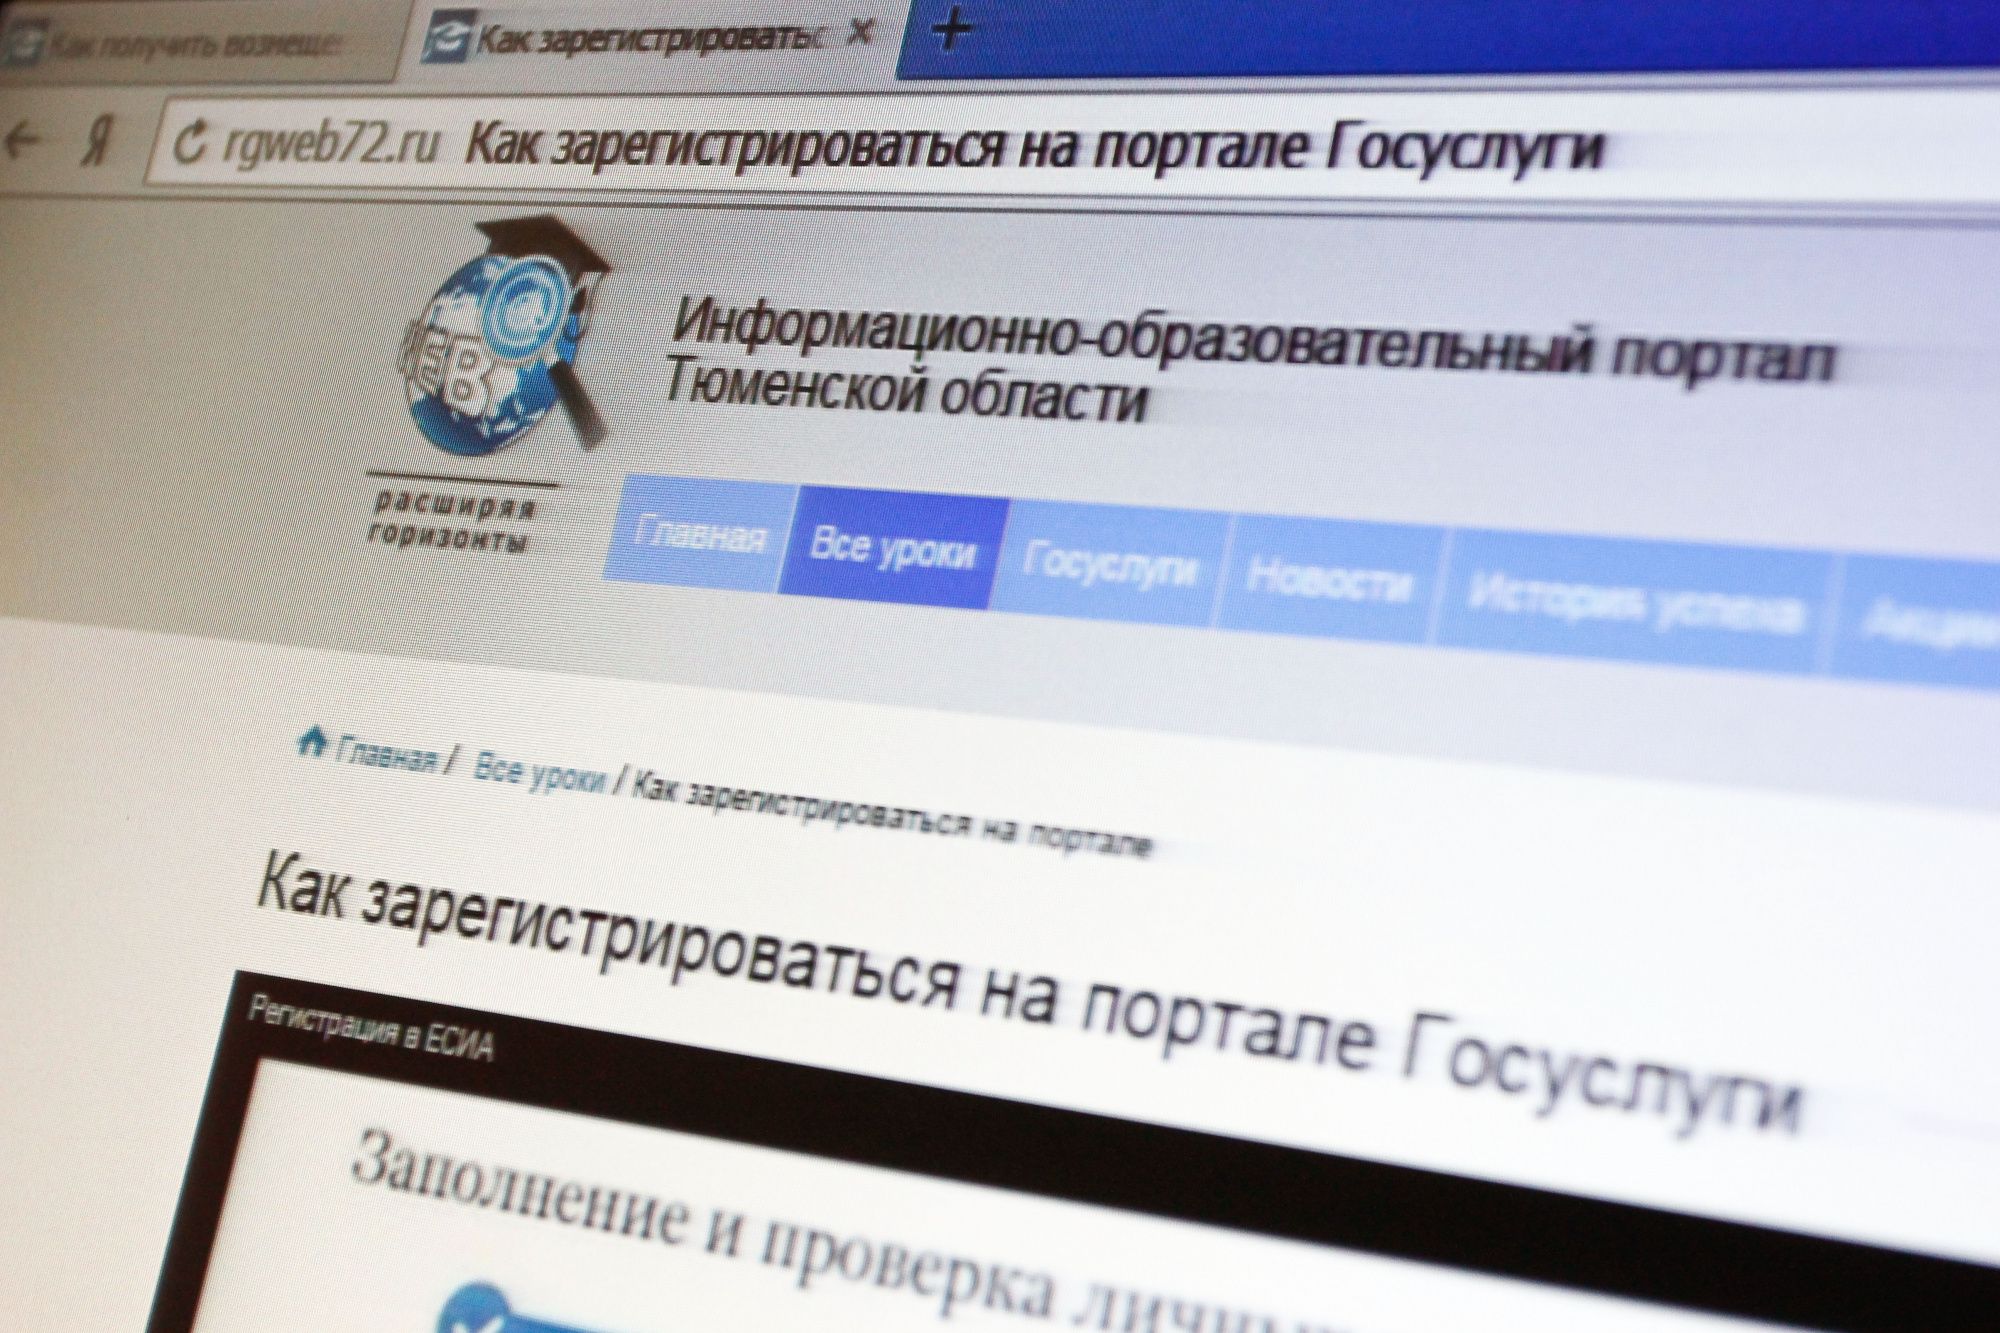 Региональный портал омской области. Программа повышения цифровой грамотности расширяя горизонты.